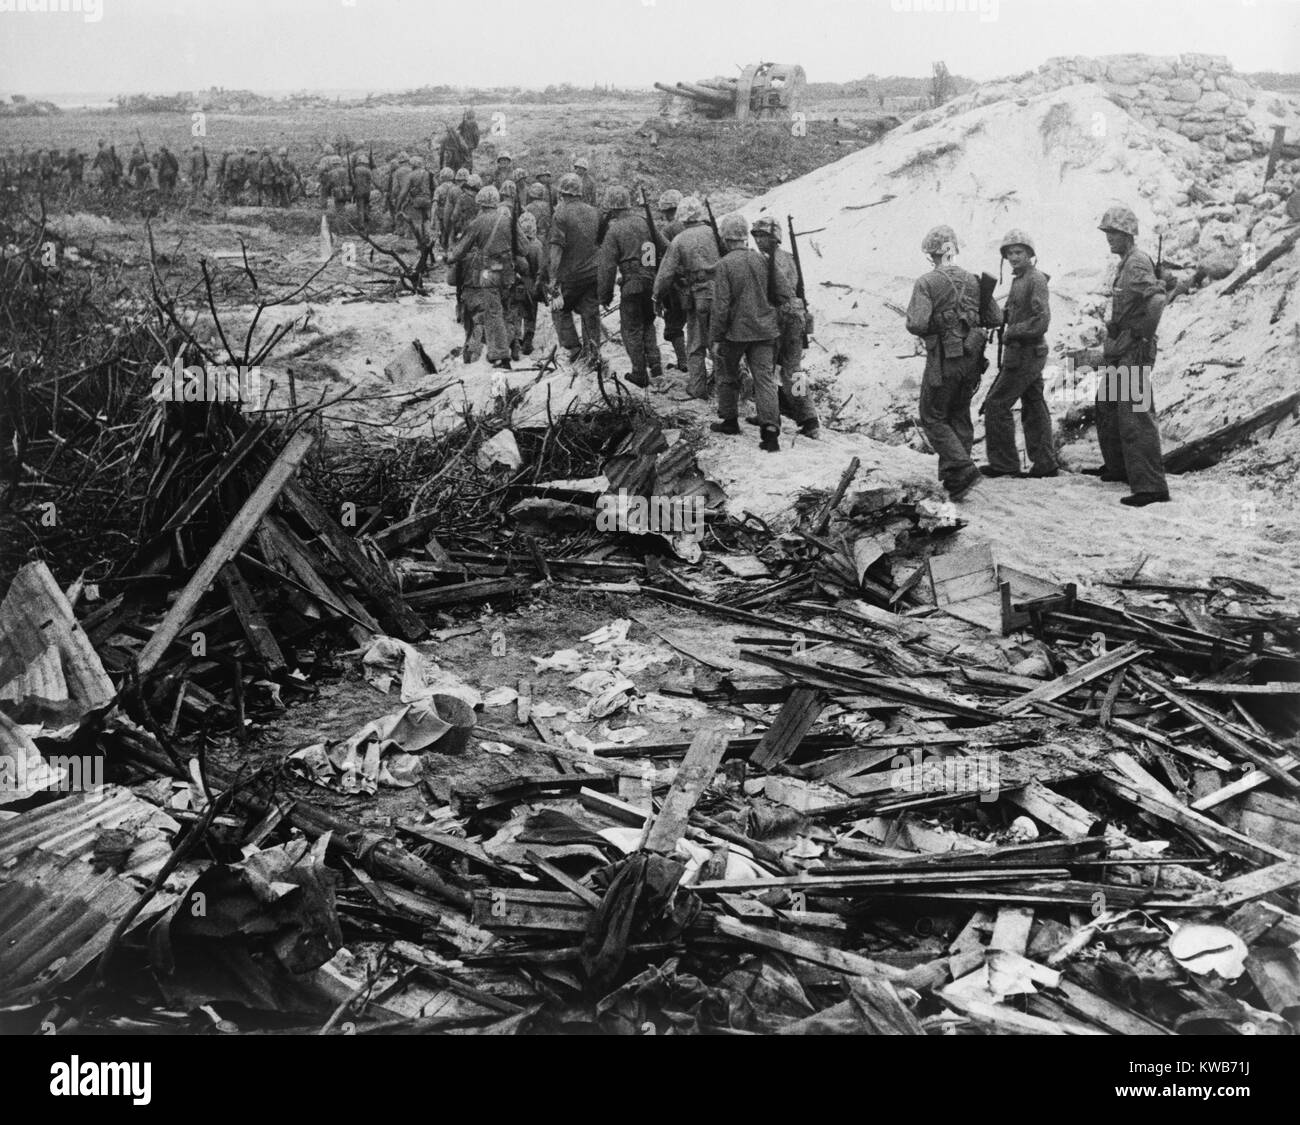 Nach dem ersten Angriff gelöscht der japanischen Soldaten von den Stränden, U.S. Marines voraus ins Landesinnere. Roi-Namur Insel Kwajalein-atoll. Feb 1-3, 1944. Weltkrieg 2. (BSLOC 2014 10 100) Stockfoto